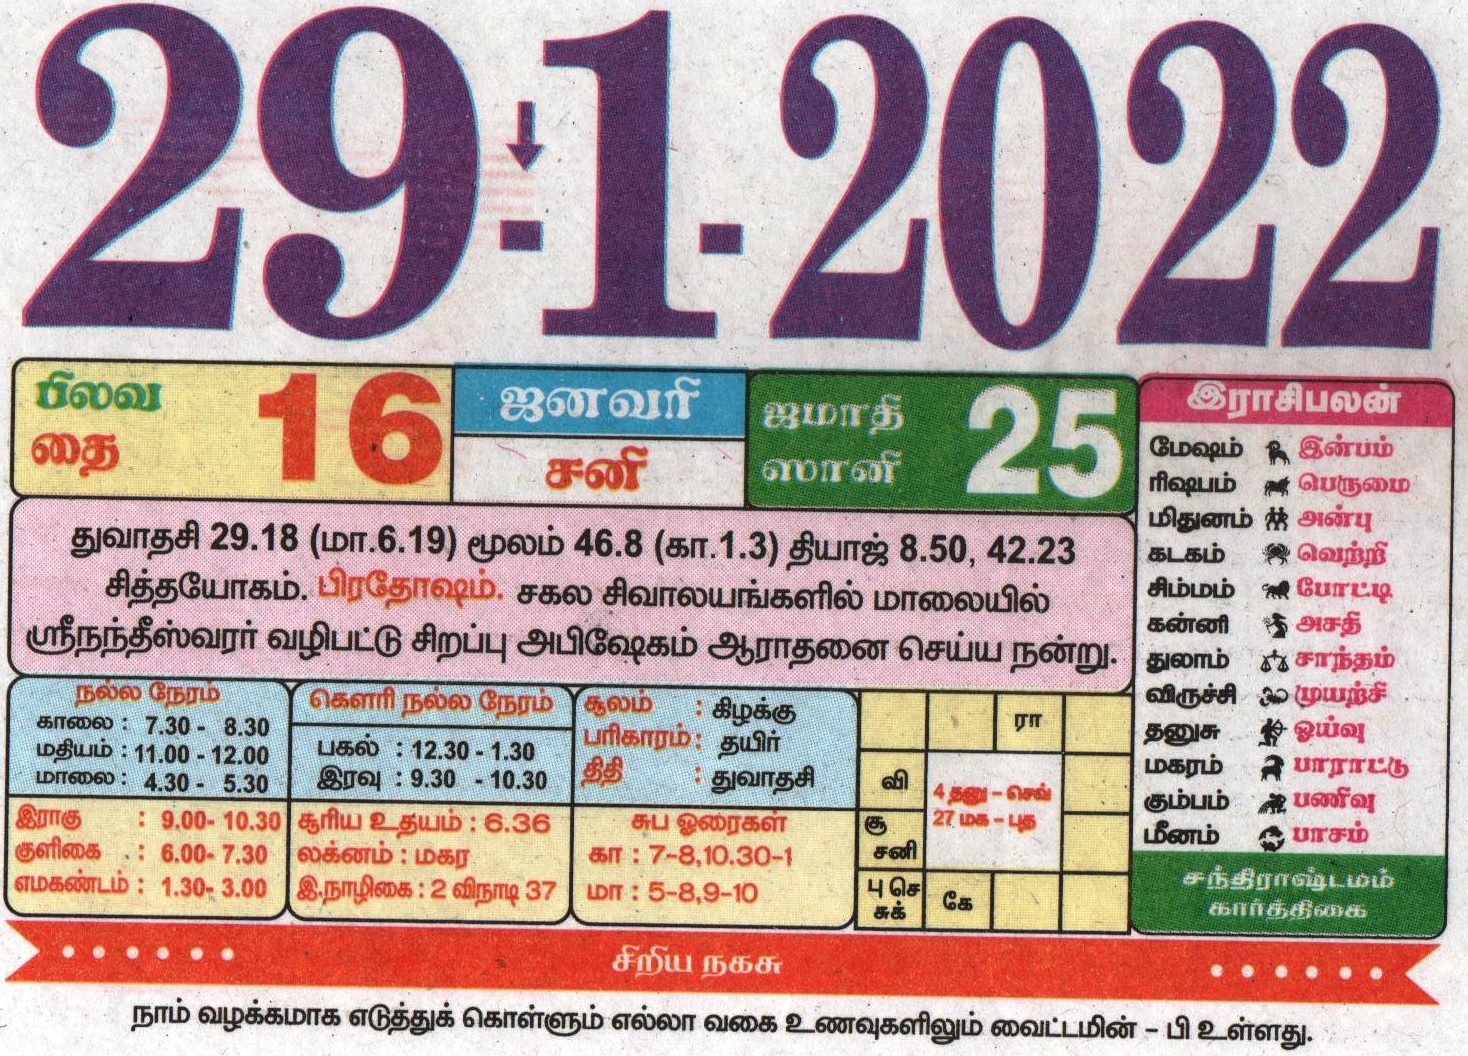 29.1.2022 Tamil Calendar Tamil Calendar 2022 Tamil Daily Calendar 2022